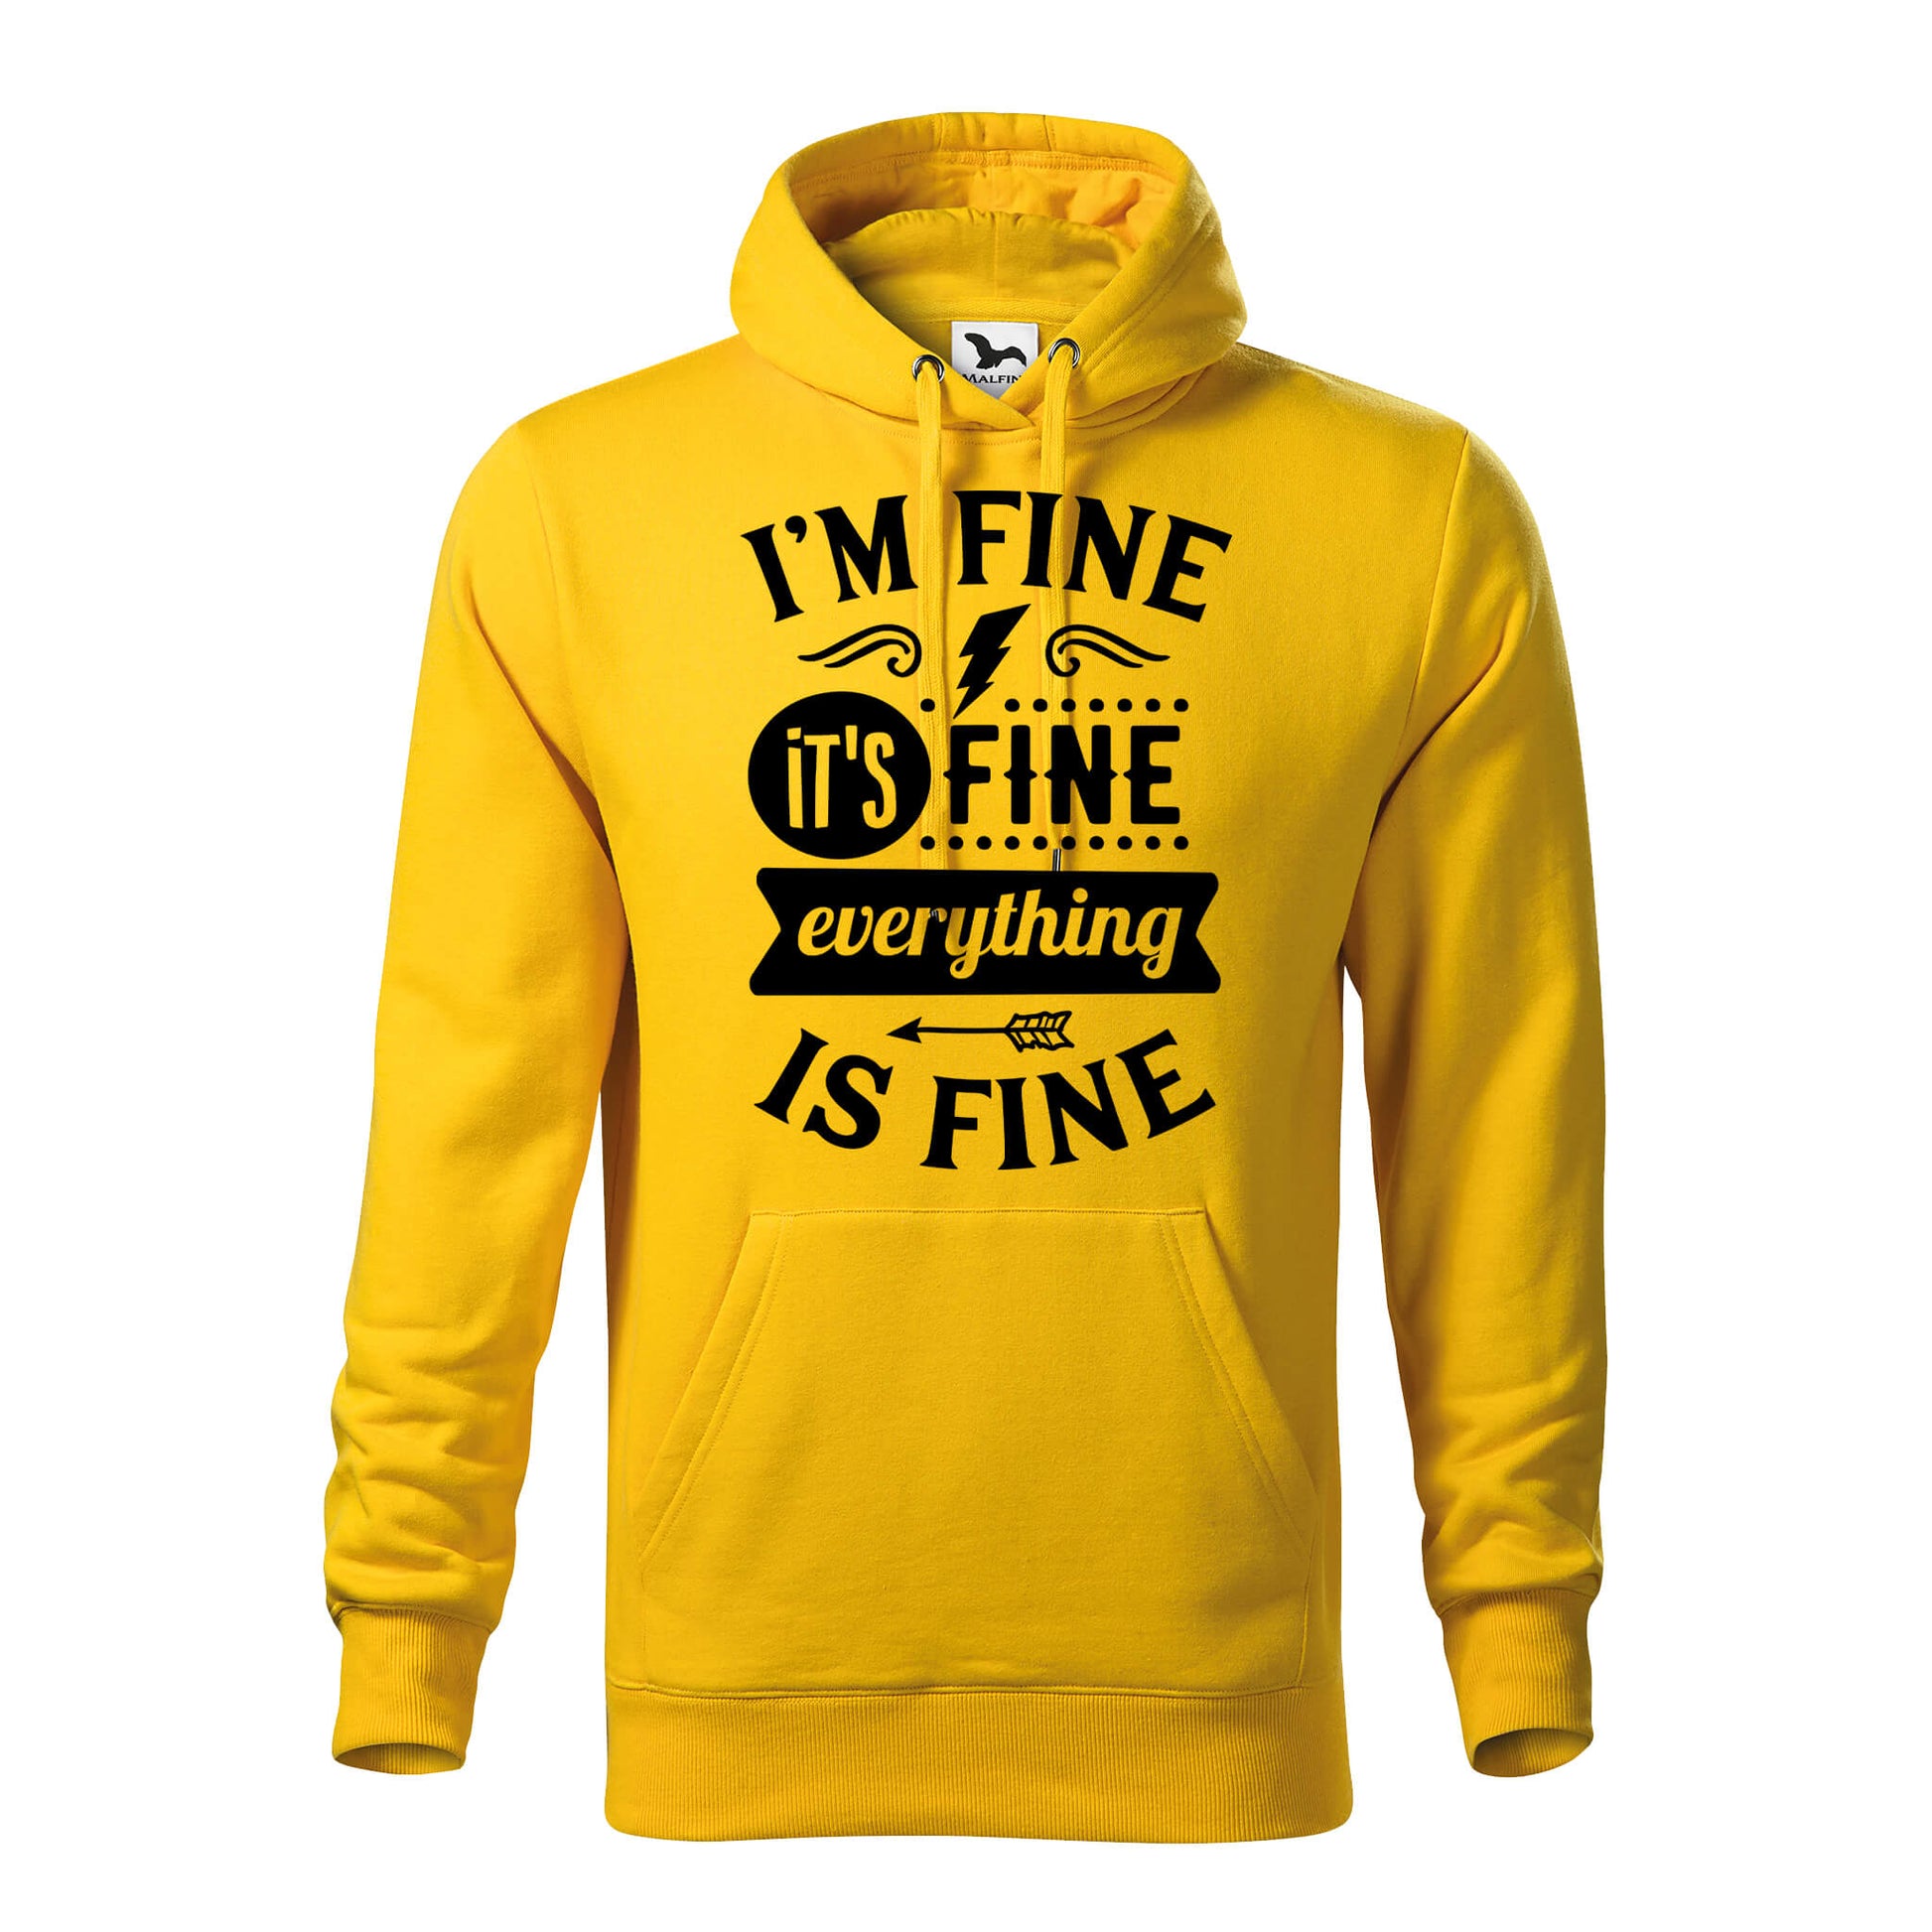 Im fine its fine hoodie - rvdesignprint